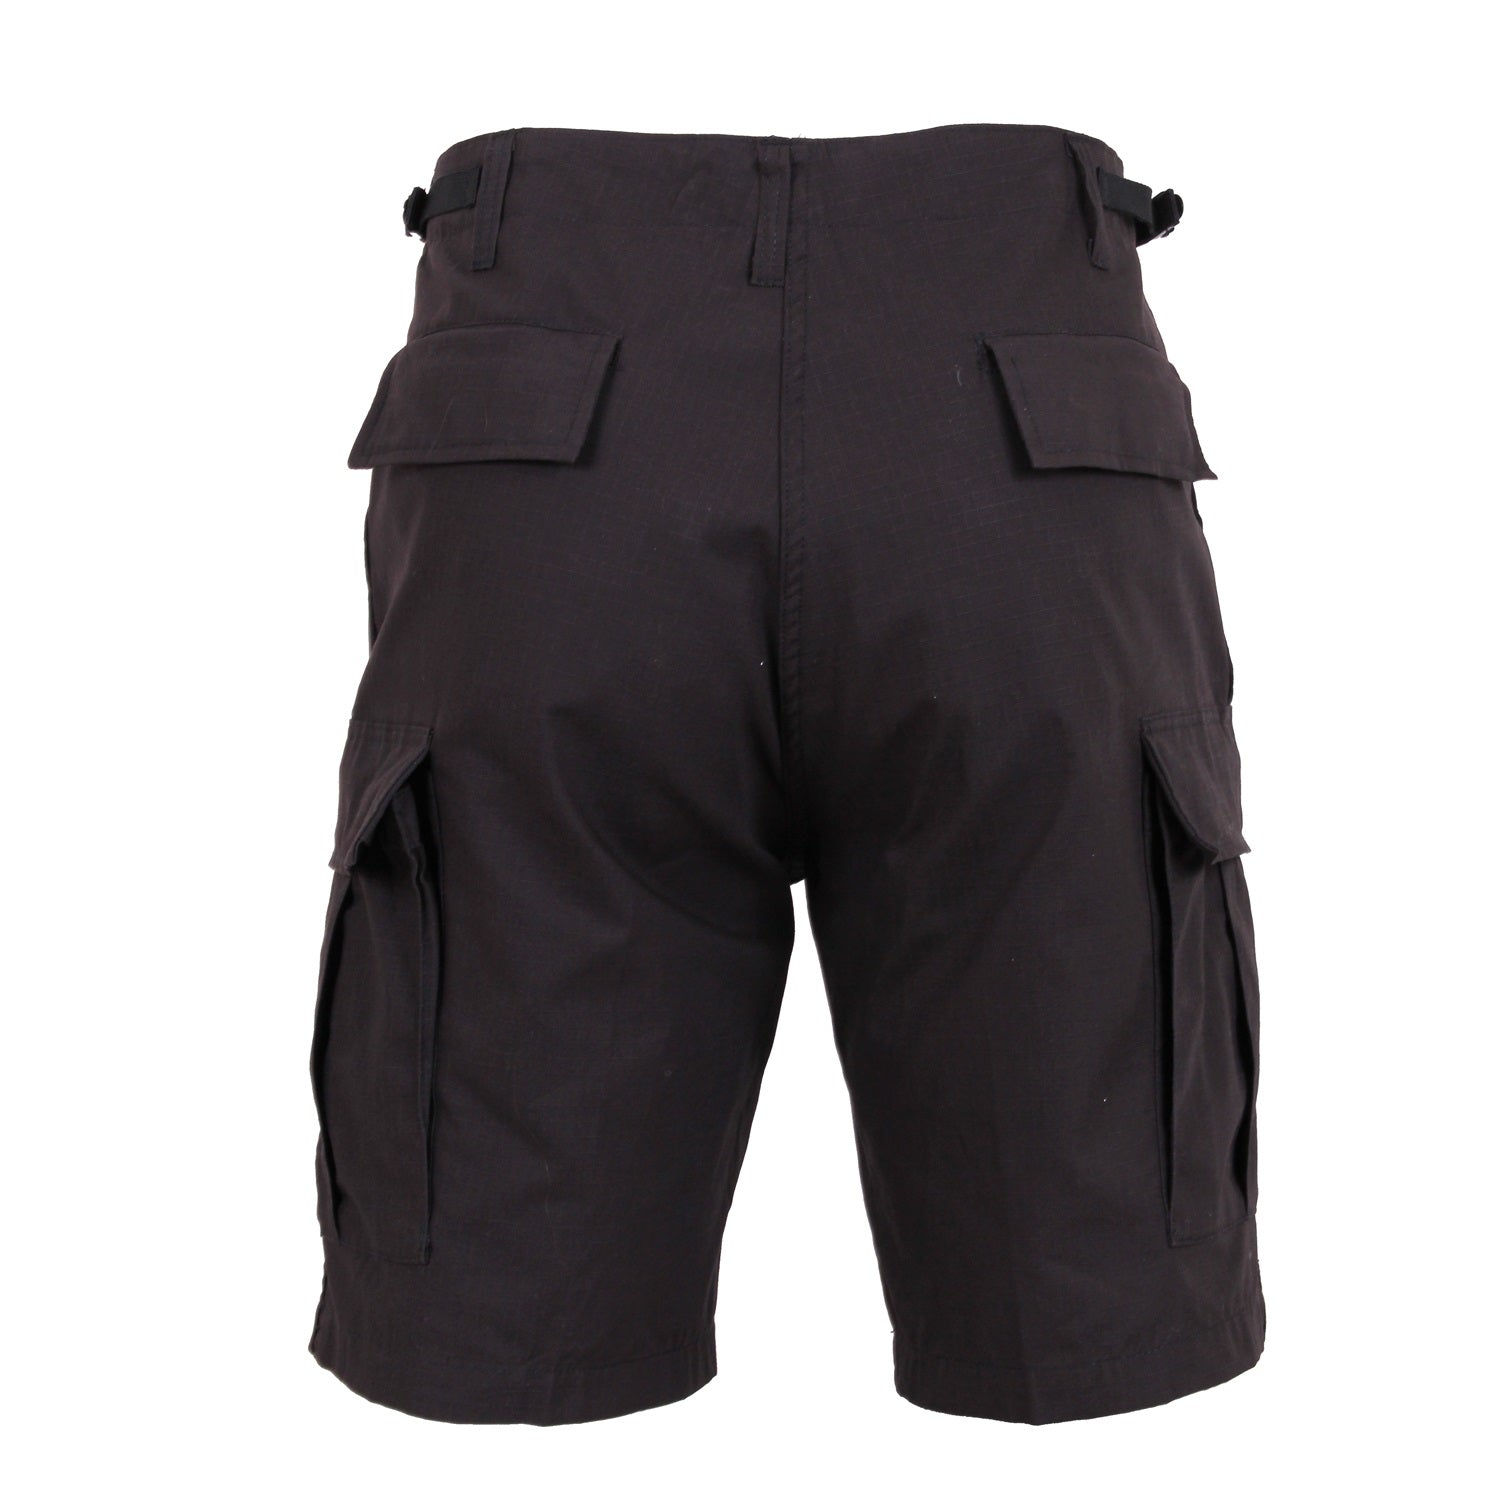 Rothco Rip-Stop BDU Shorts Black